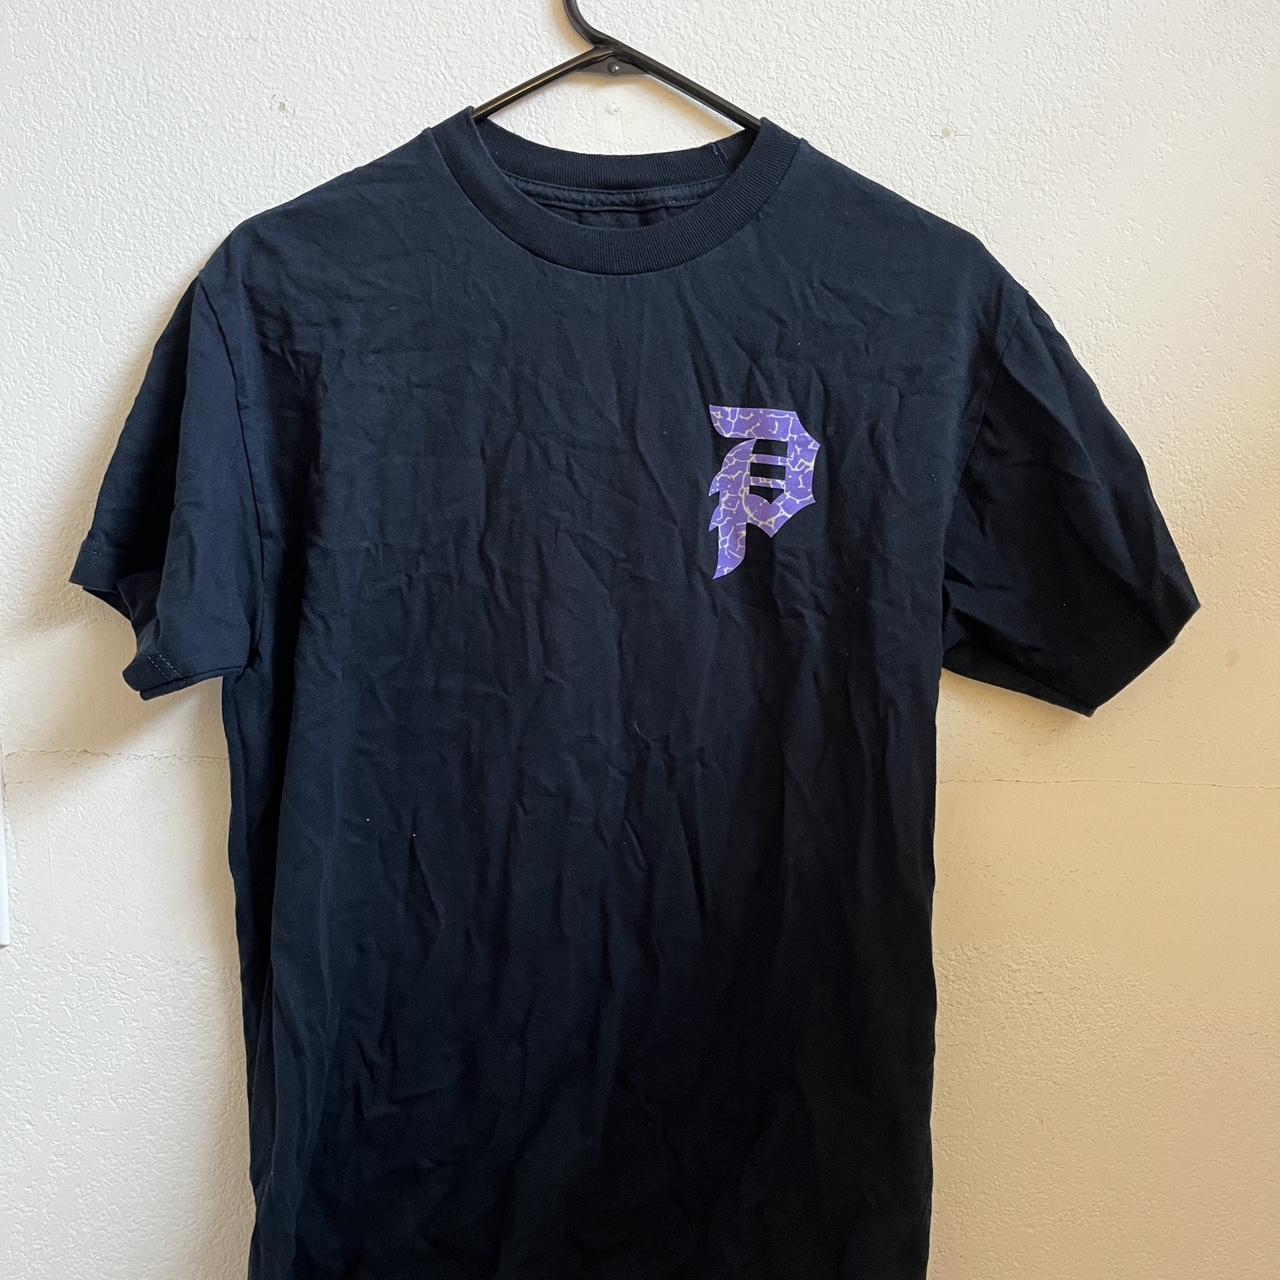 Primitive Men's Black and Purple T-shirt | Depop